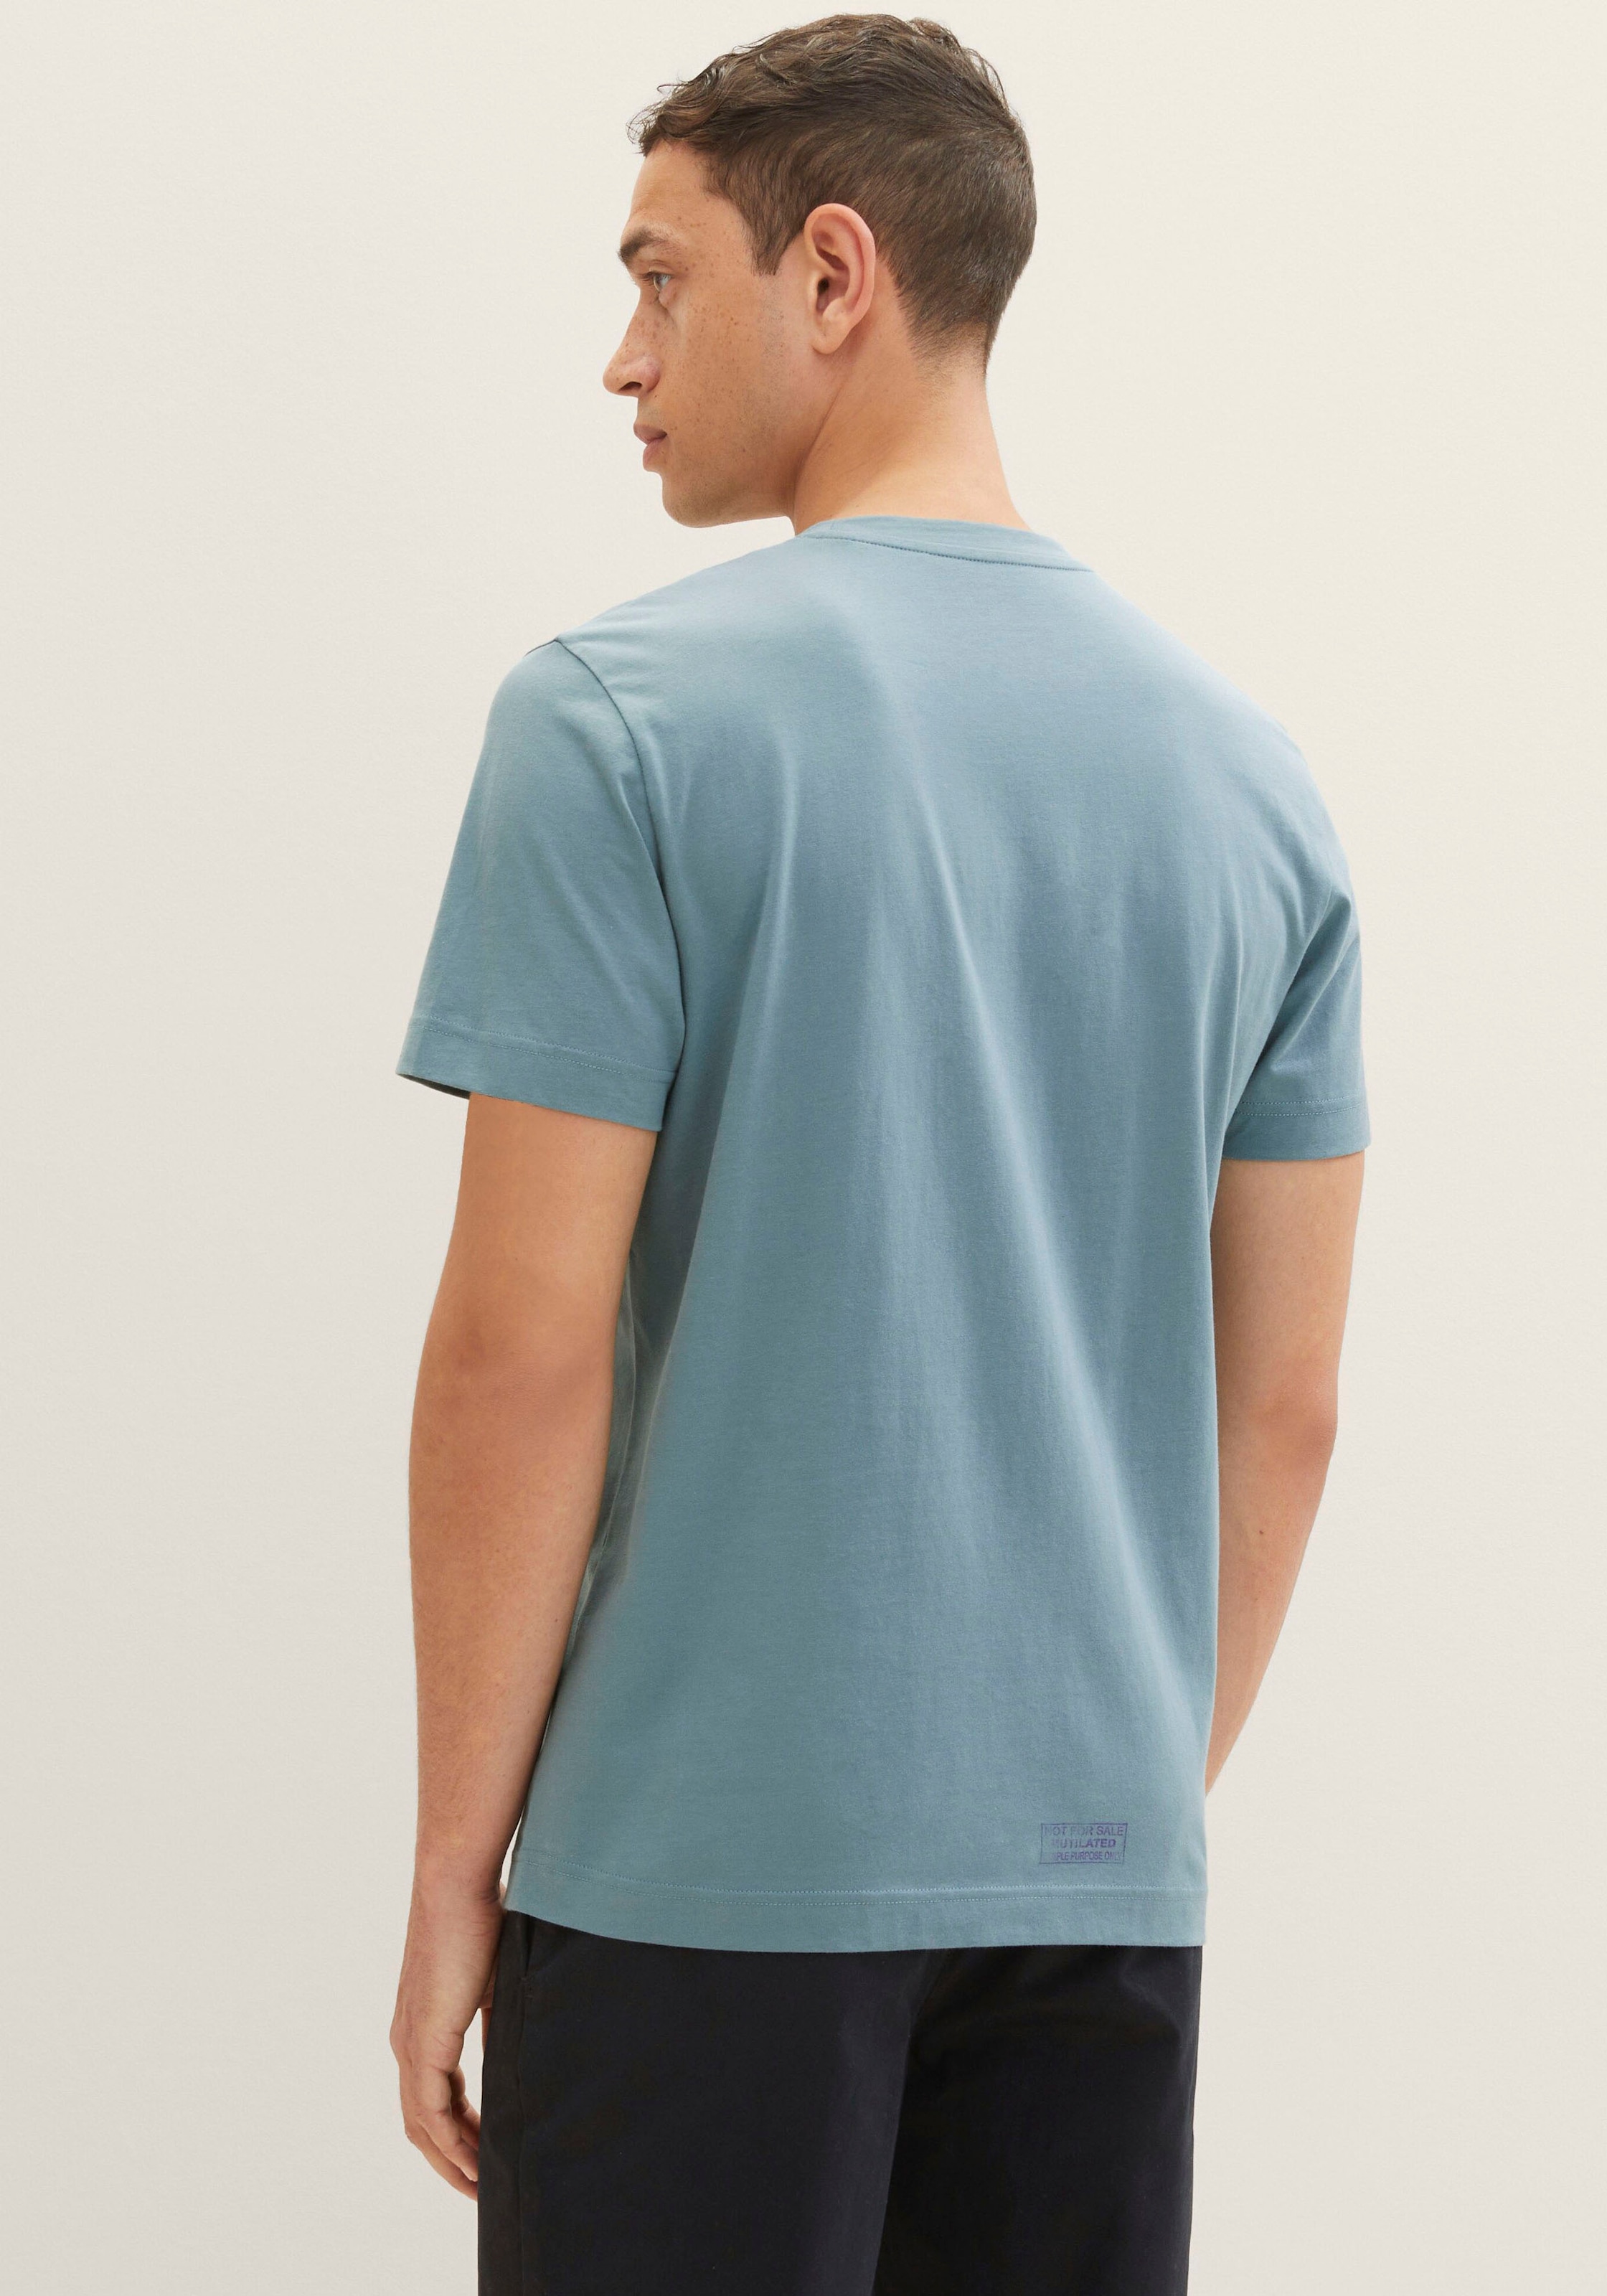 TOM TAILOR T-Shirt, 1x mit grossem Print 1x mit kleinem Logo auf der Brust